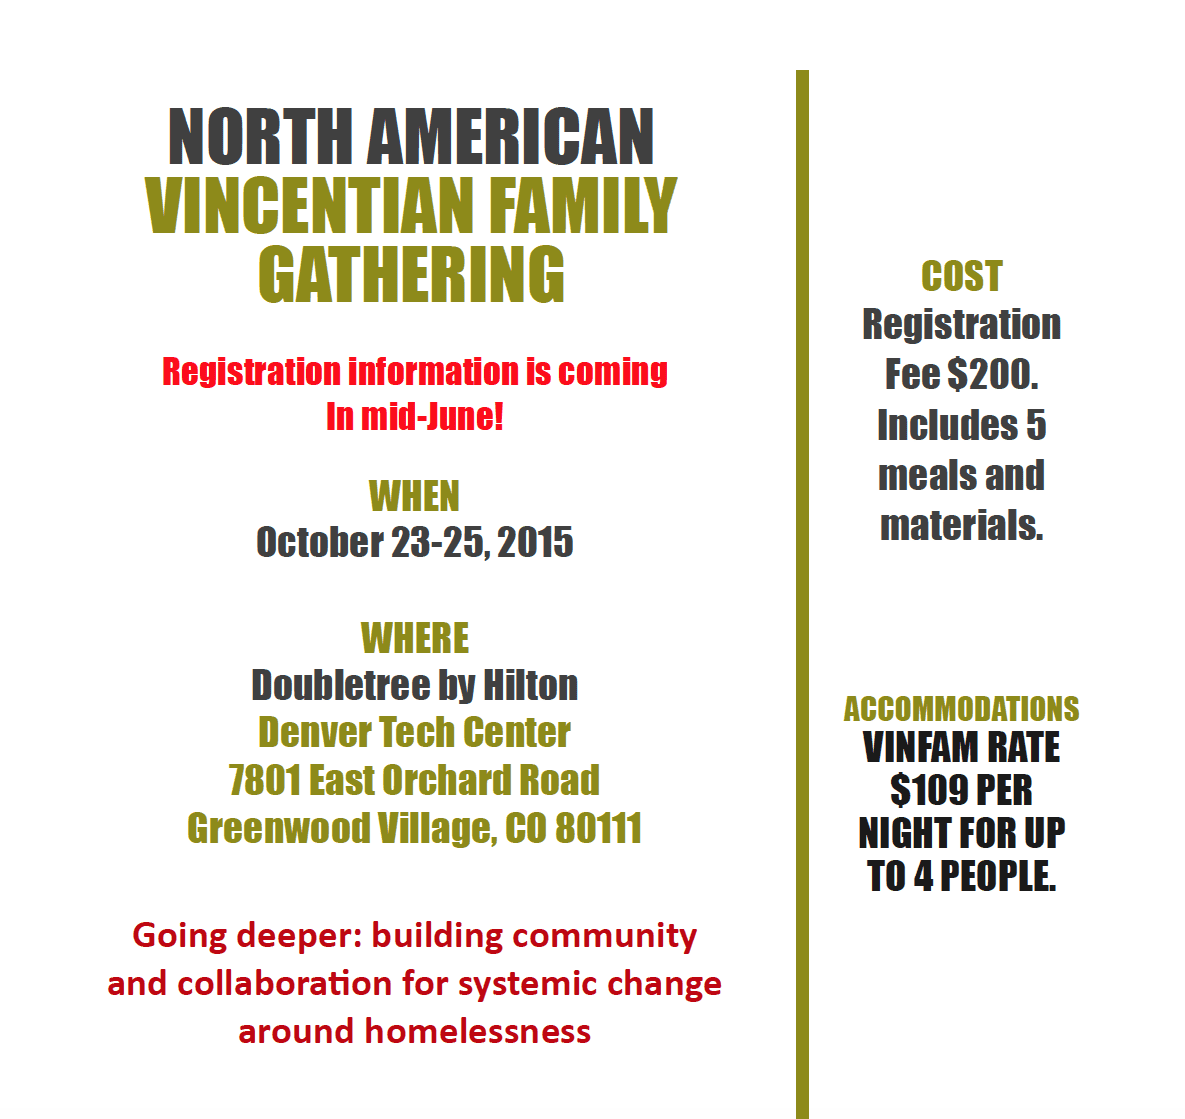 2015 Vincentian Family Gathering in Denver